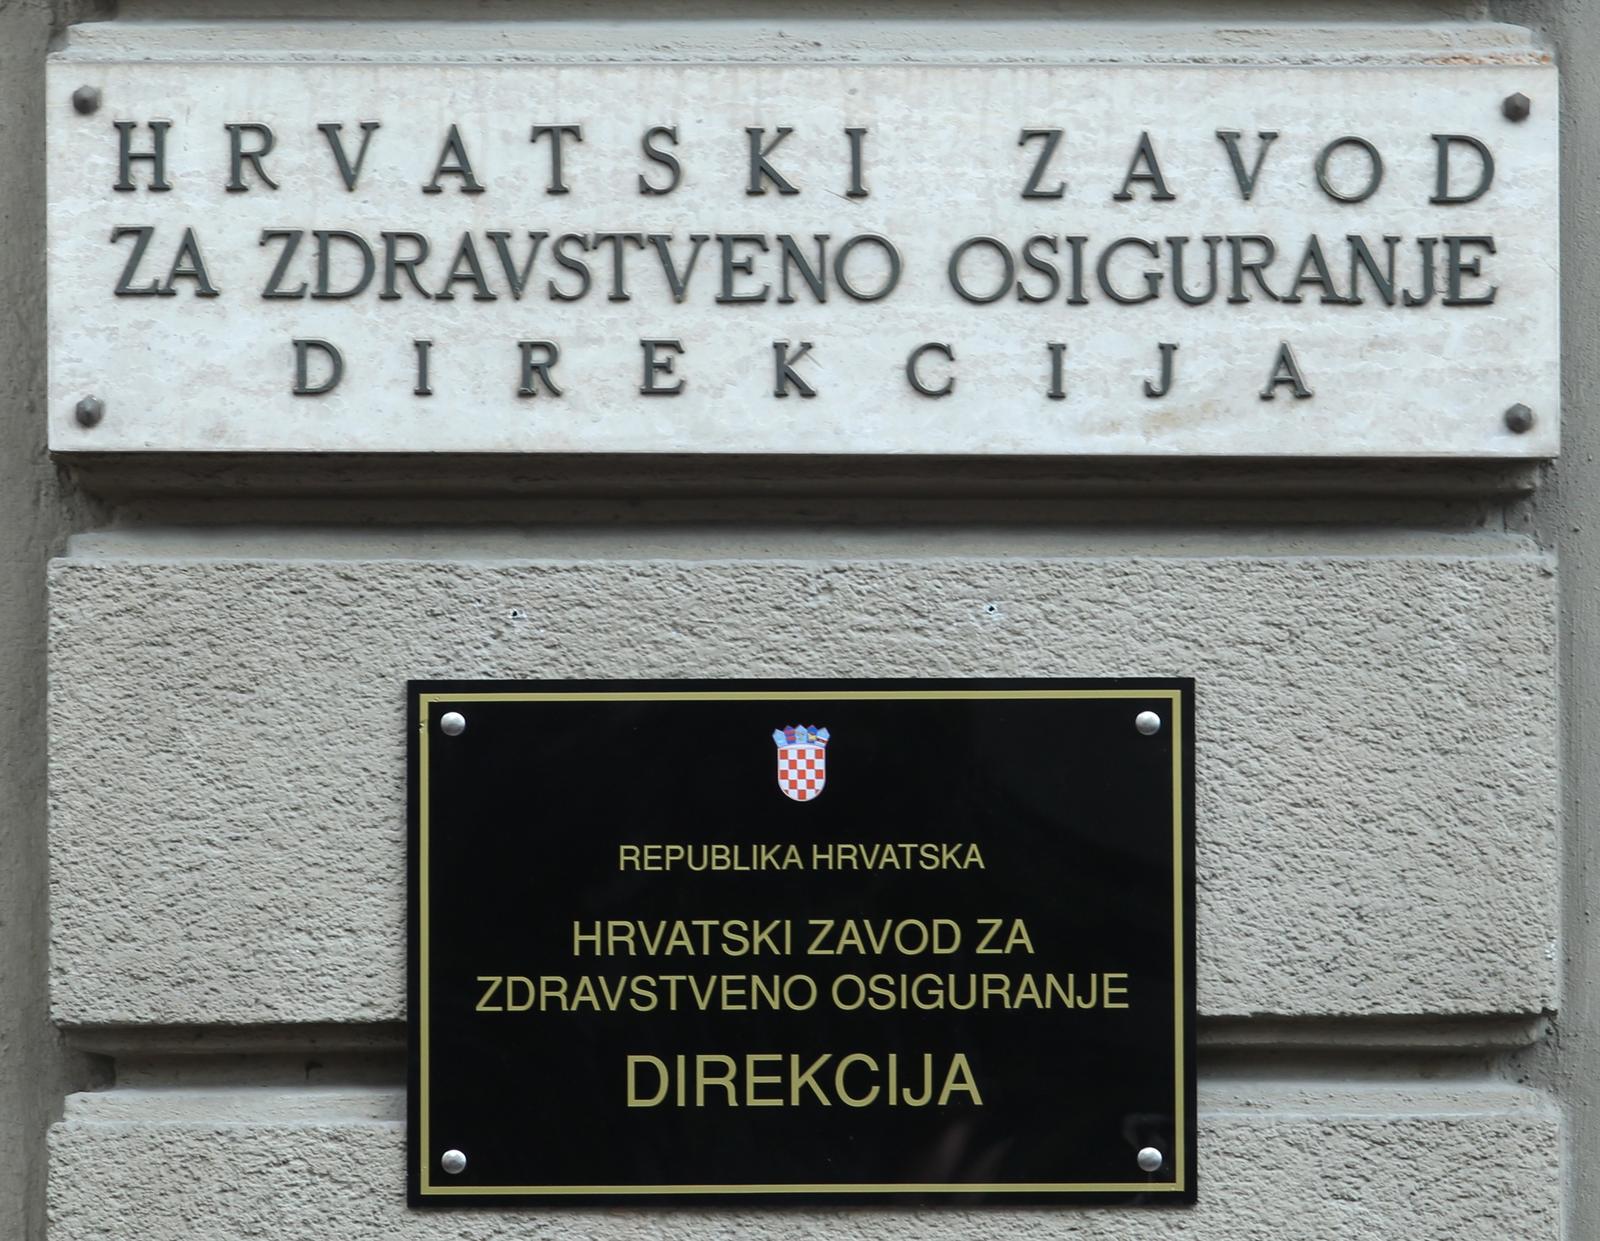 16.09.2013., Zagreb -  Direkcija Hrvatskog zavoda za zdravstveno osiguranje. Photo: Zeljko Lukunic/PIXSELL